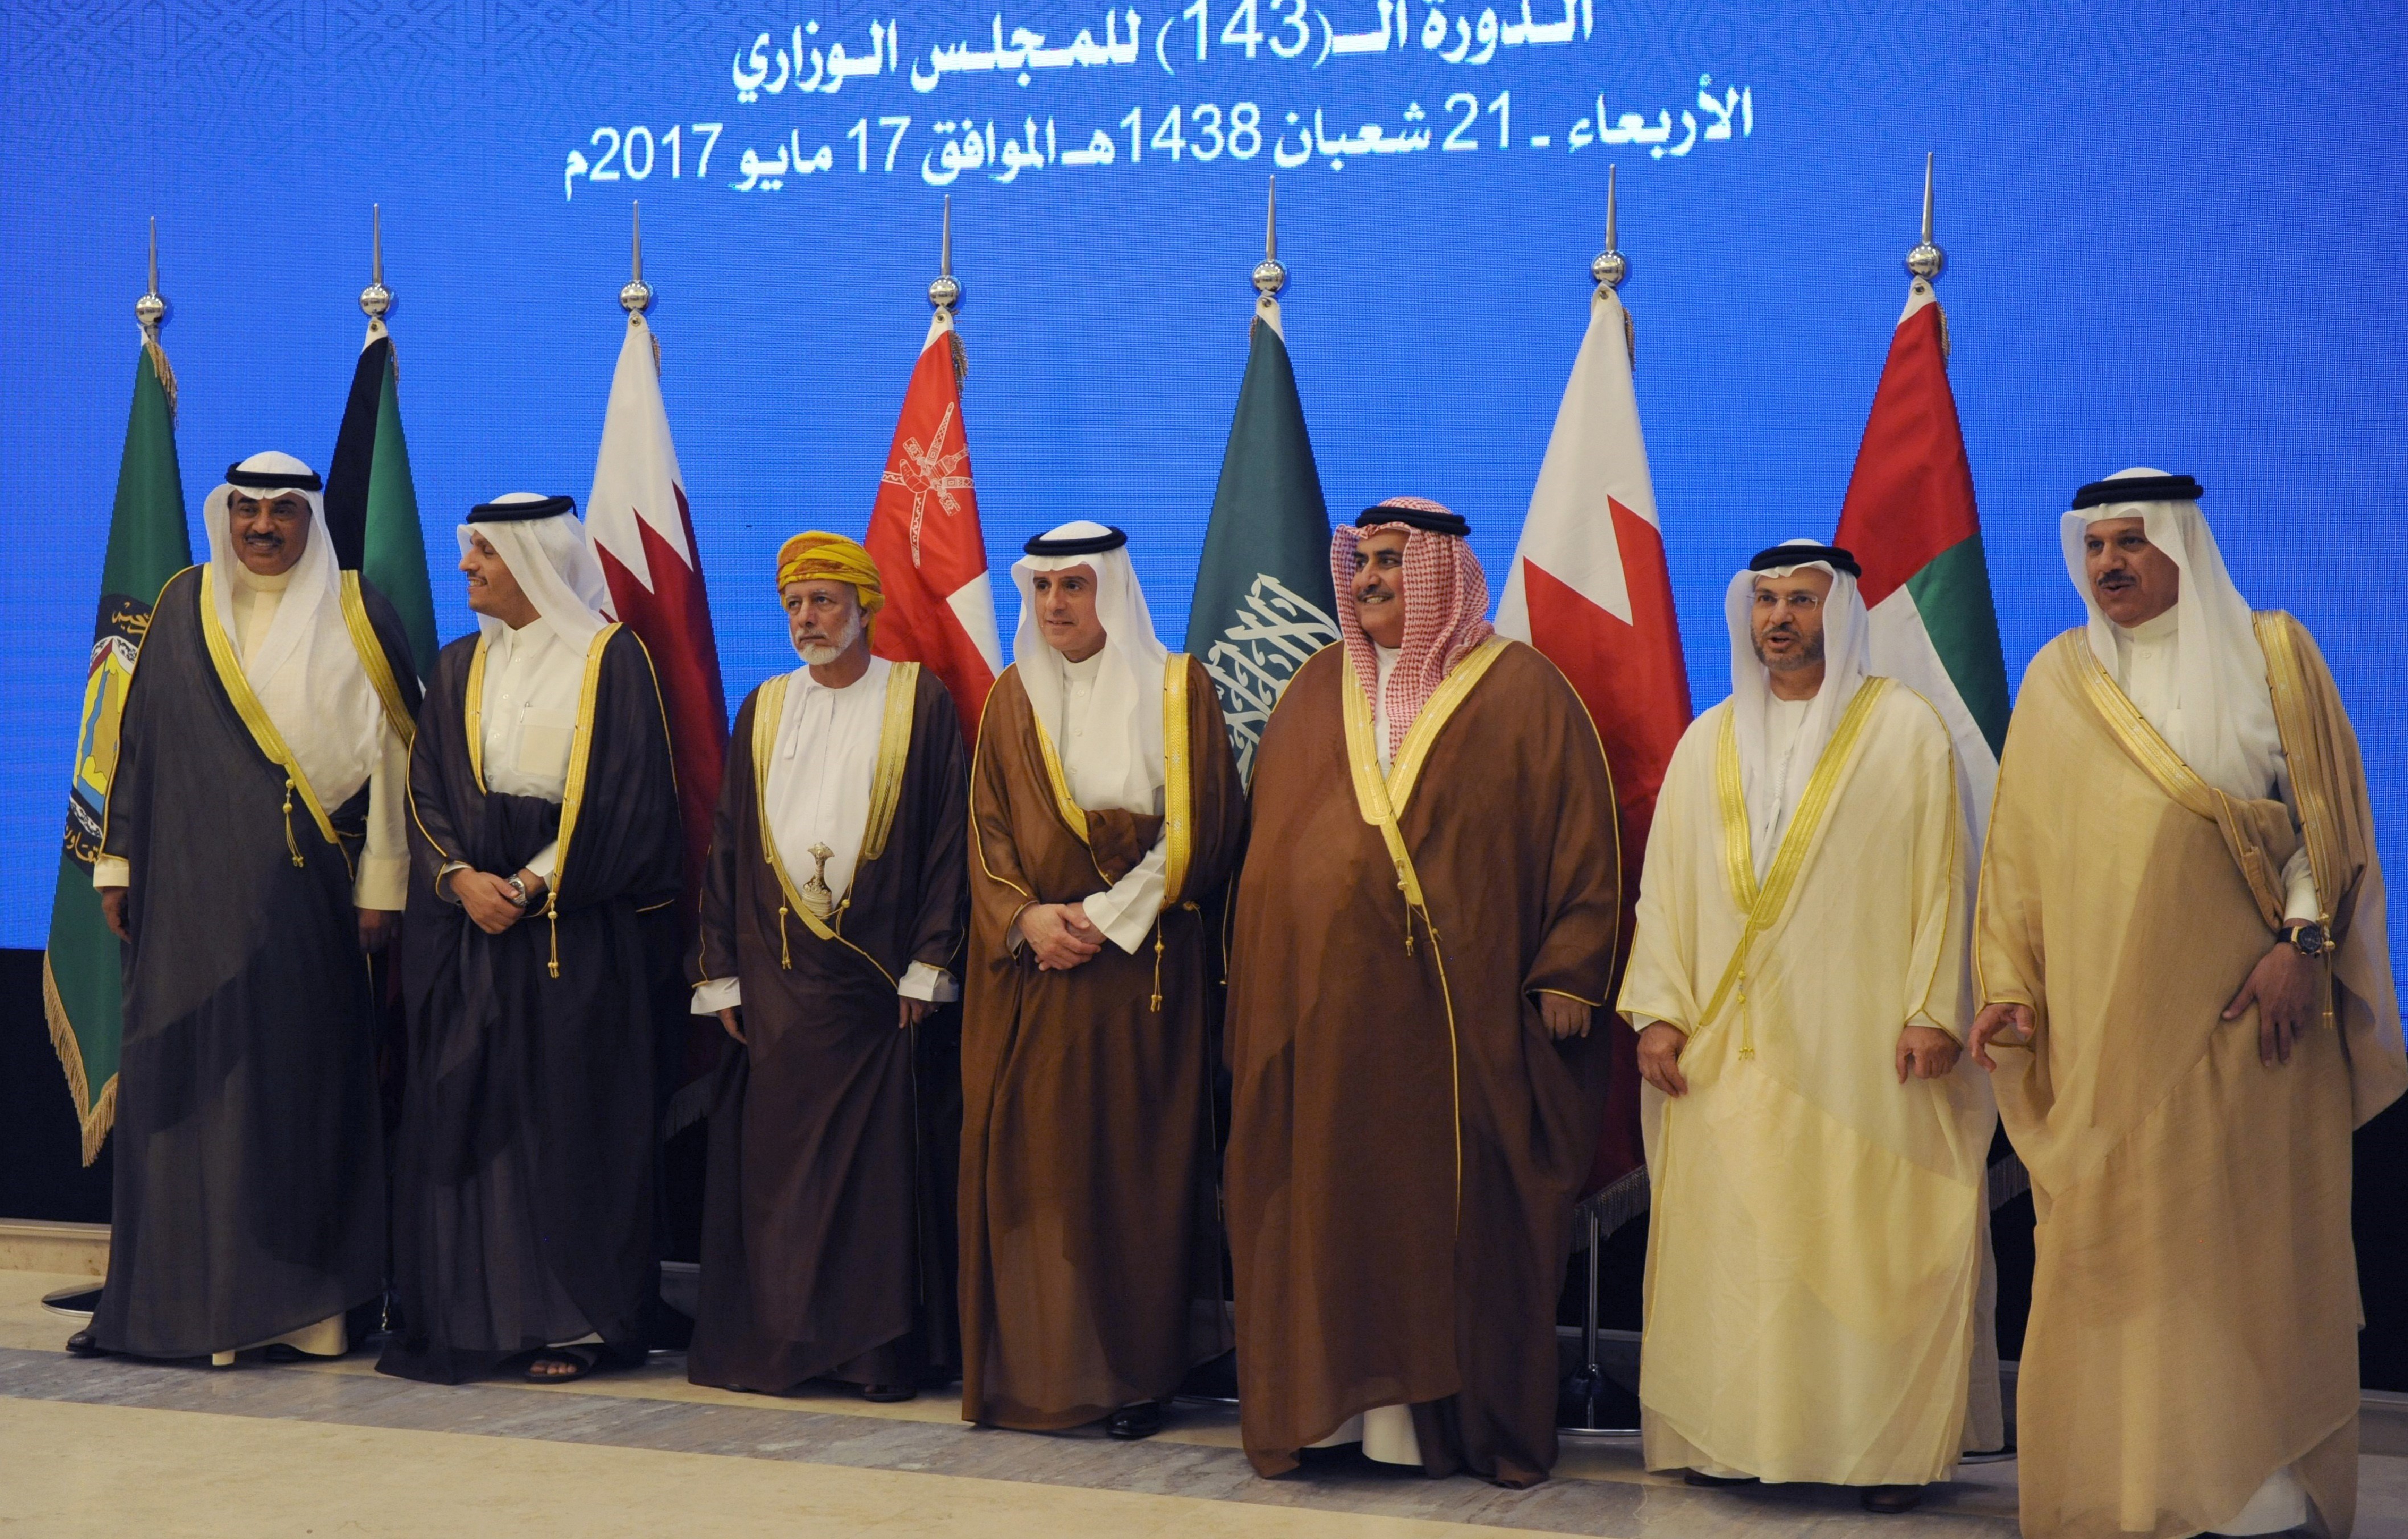 Ngoại trưởng Qatar Mohammed bin Abdulrahman bin Jassim al-Thani (thứ 2, trái sang) chụp ảnh cùng Ngoại trưởng các quốc gia thành viên Hội đồng Hợp tác vùng Vịnh (GCC) ở Riyadh, Saudi Arabia ngày 17/5/2017. (Nguồn: AFP/TTXVN)